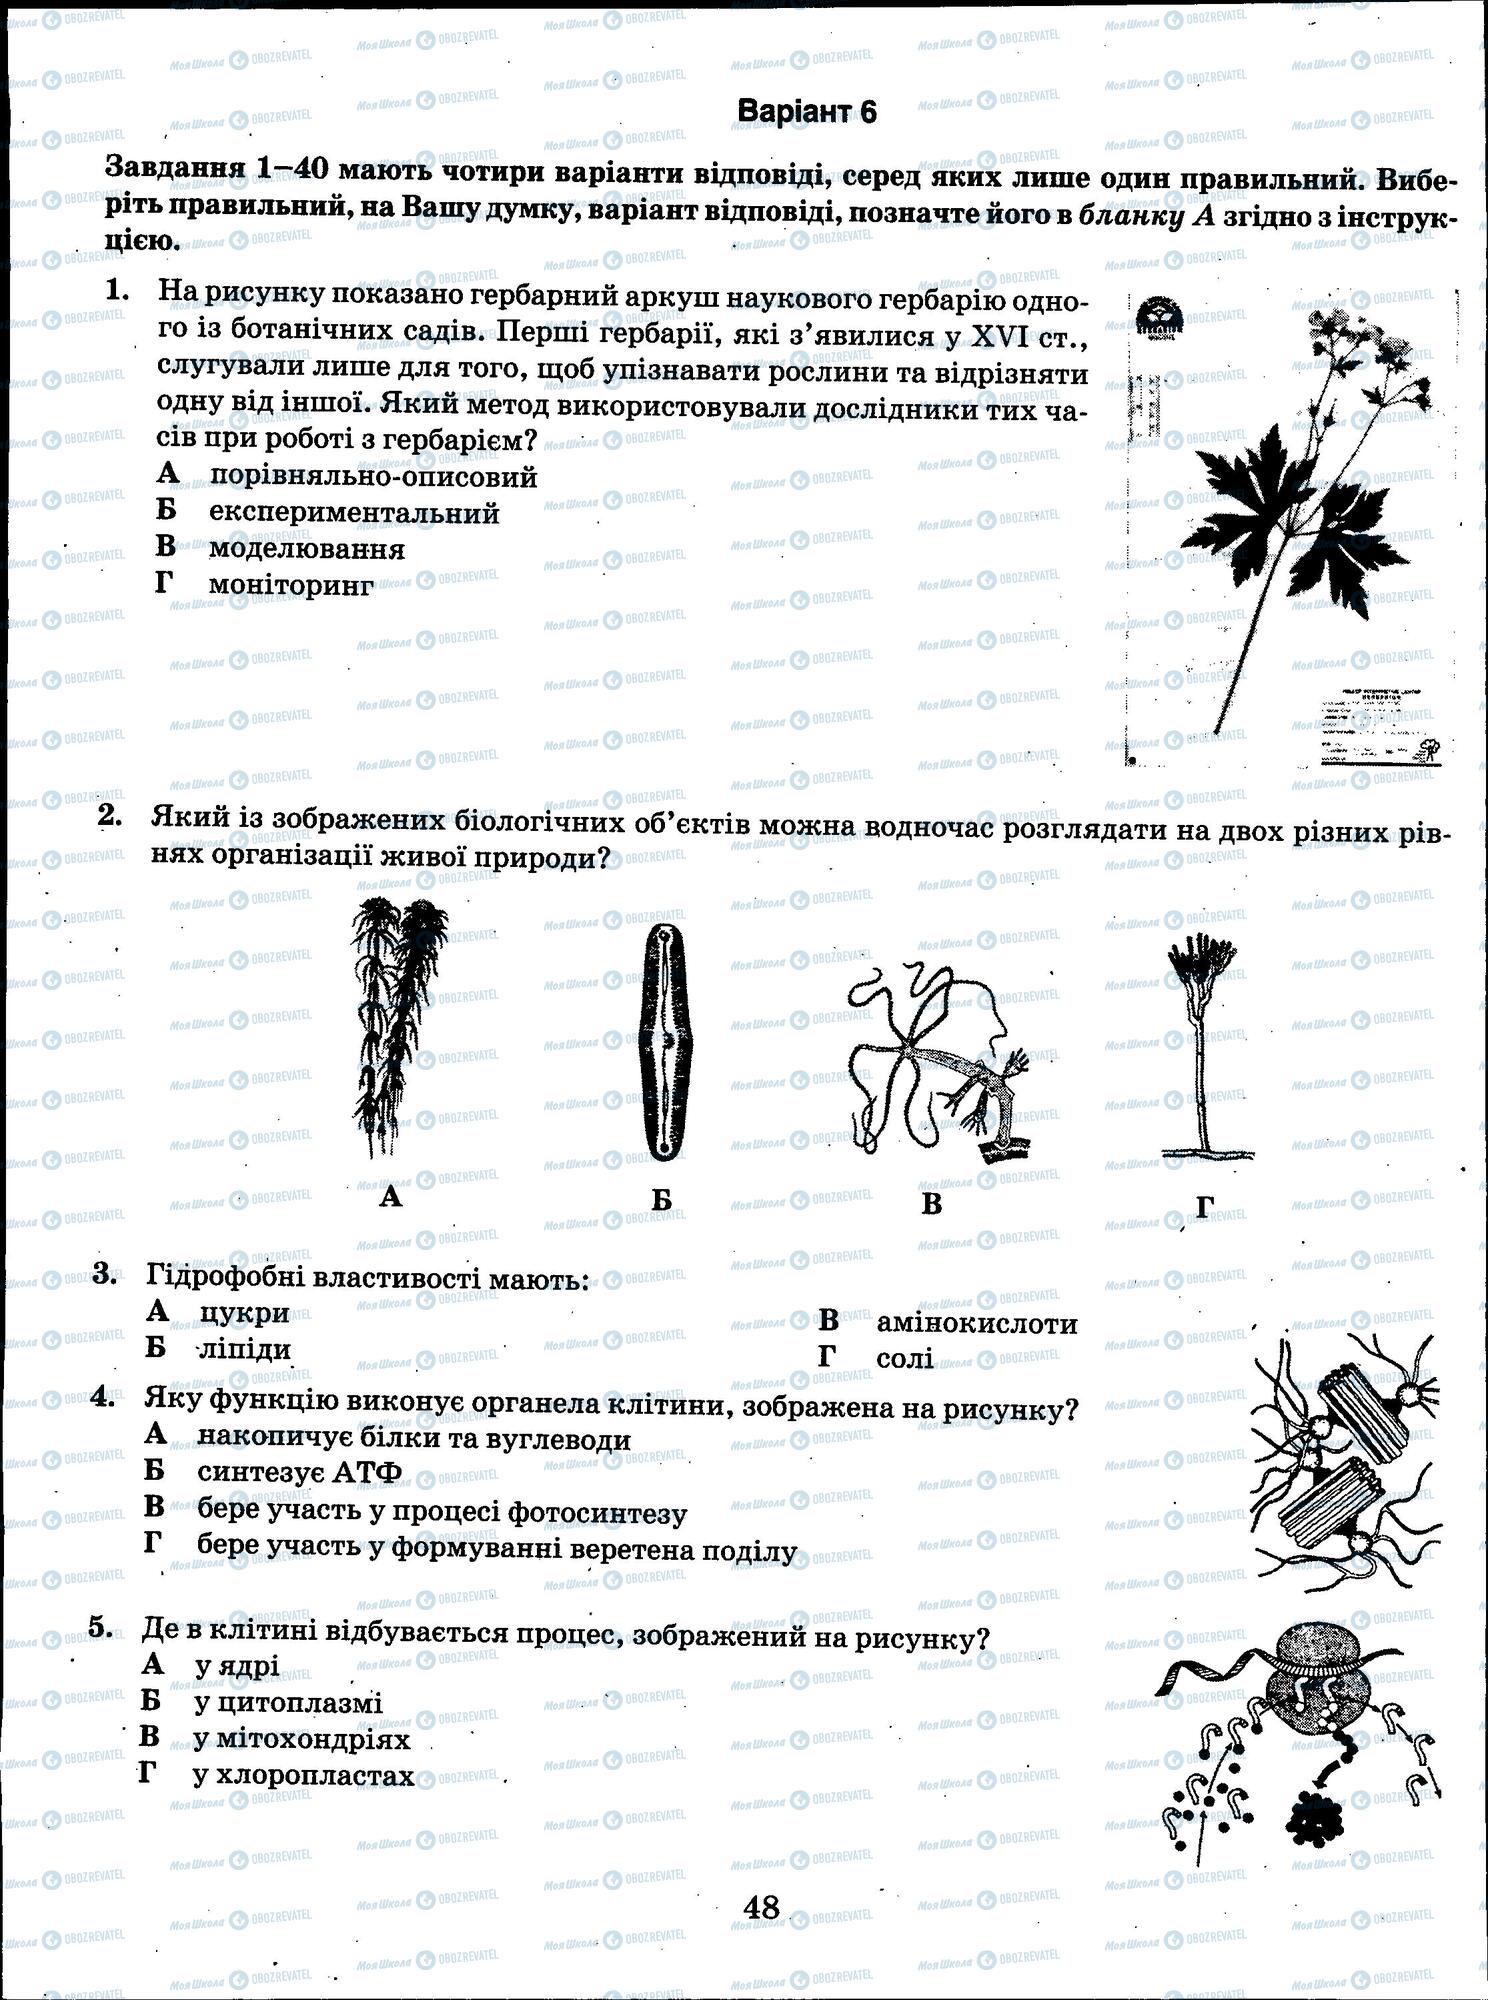 ЗНО Биология 11 класс страница 48